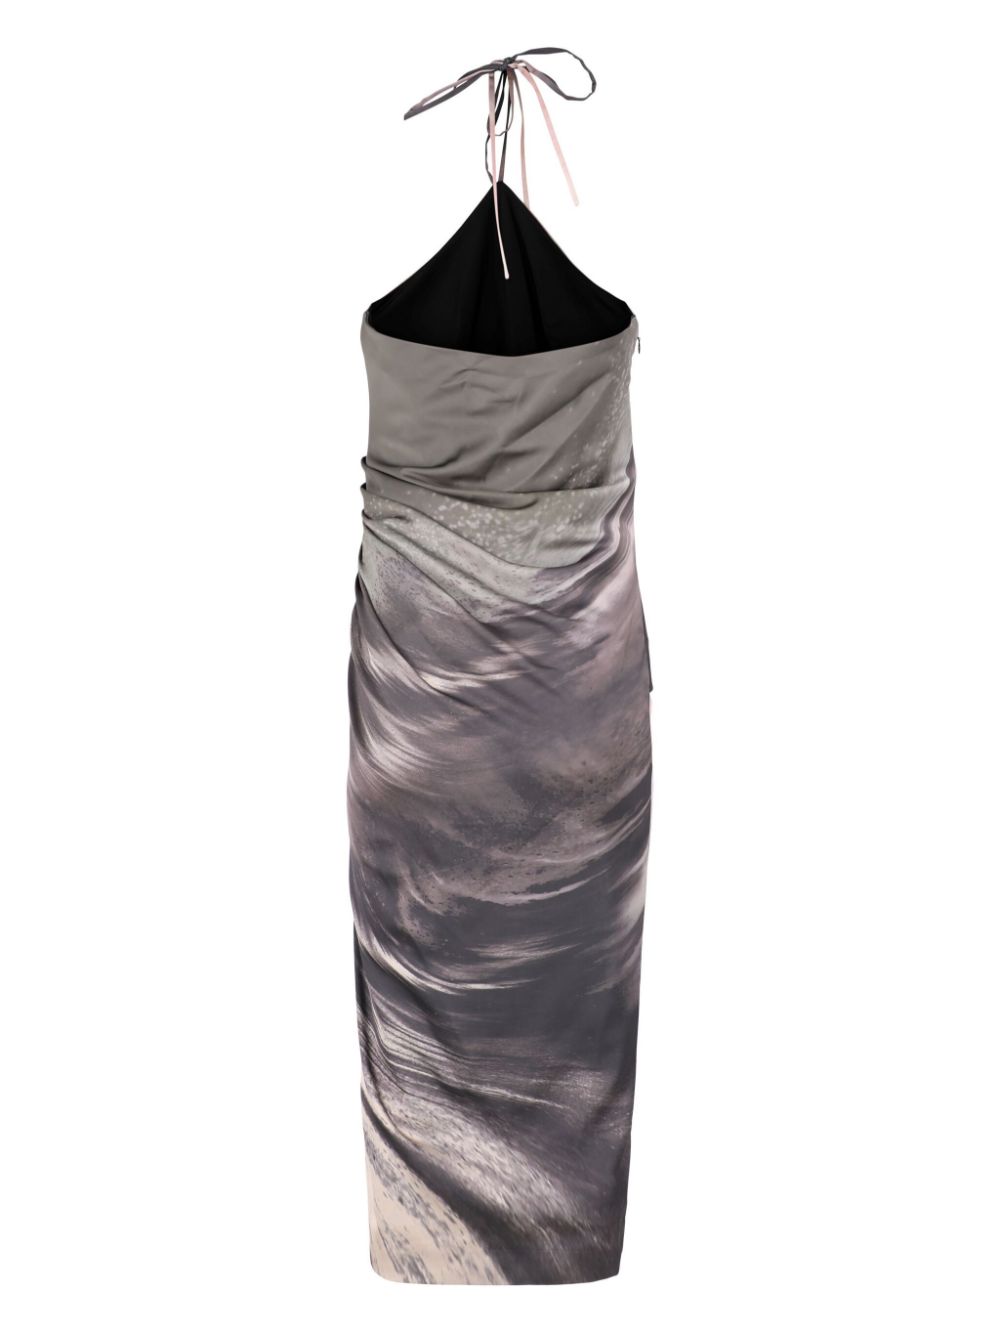 Simkhai Hansel jurk met halternek en print - Grijs